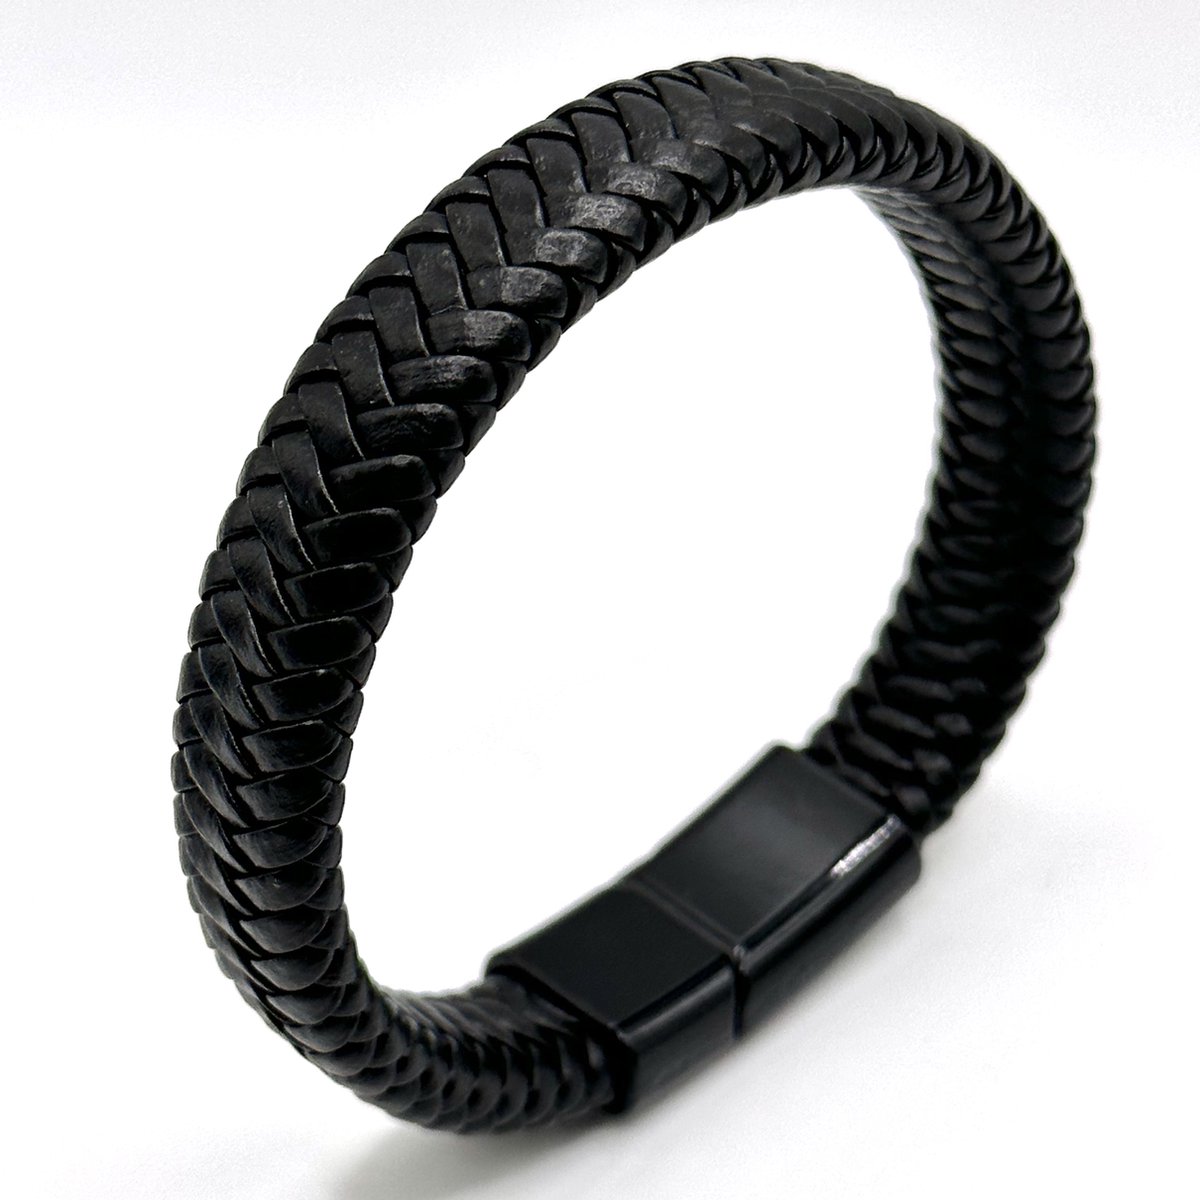 Zwart Lederen Gevlochten Wrap Armband - 20cm - Armband Leer Zwart - Gevlochten Armband - Voor Hem - Voor Man - Voor Haar - Voor Vrouw - Armband Cadeau